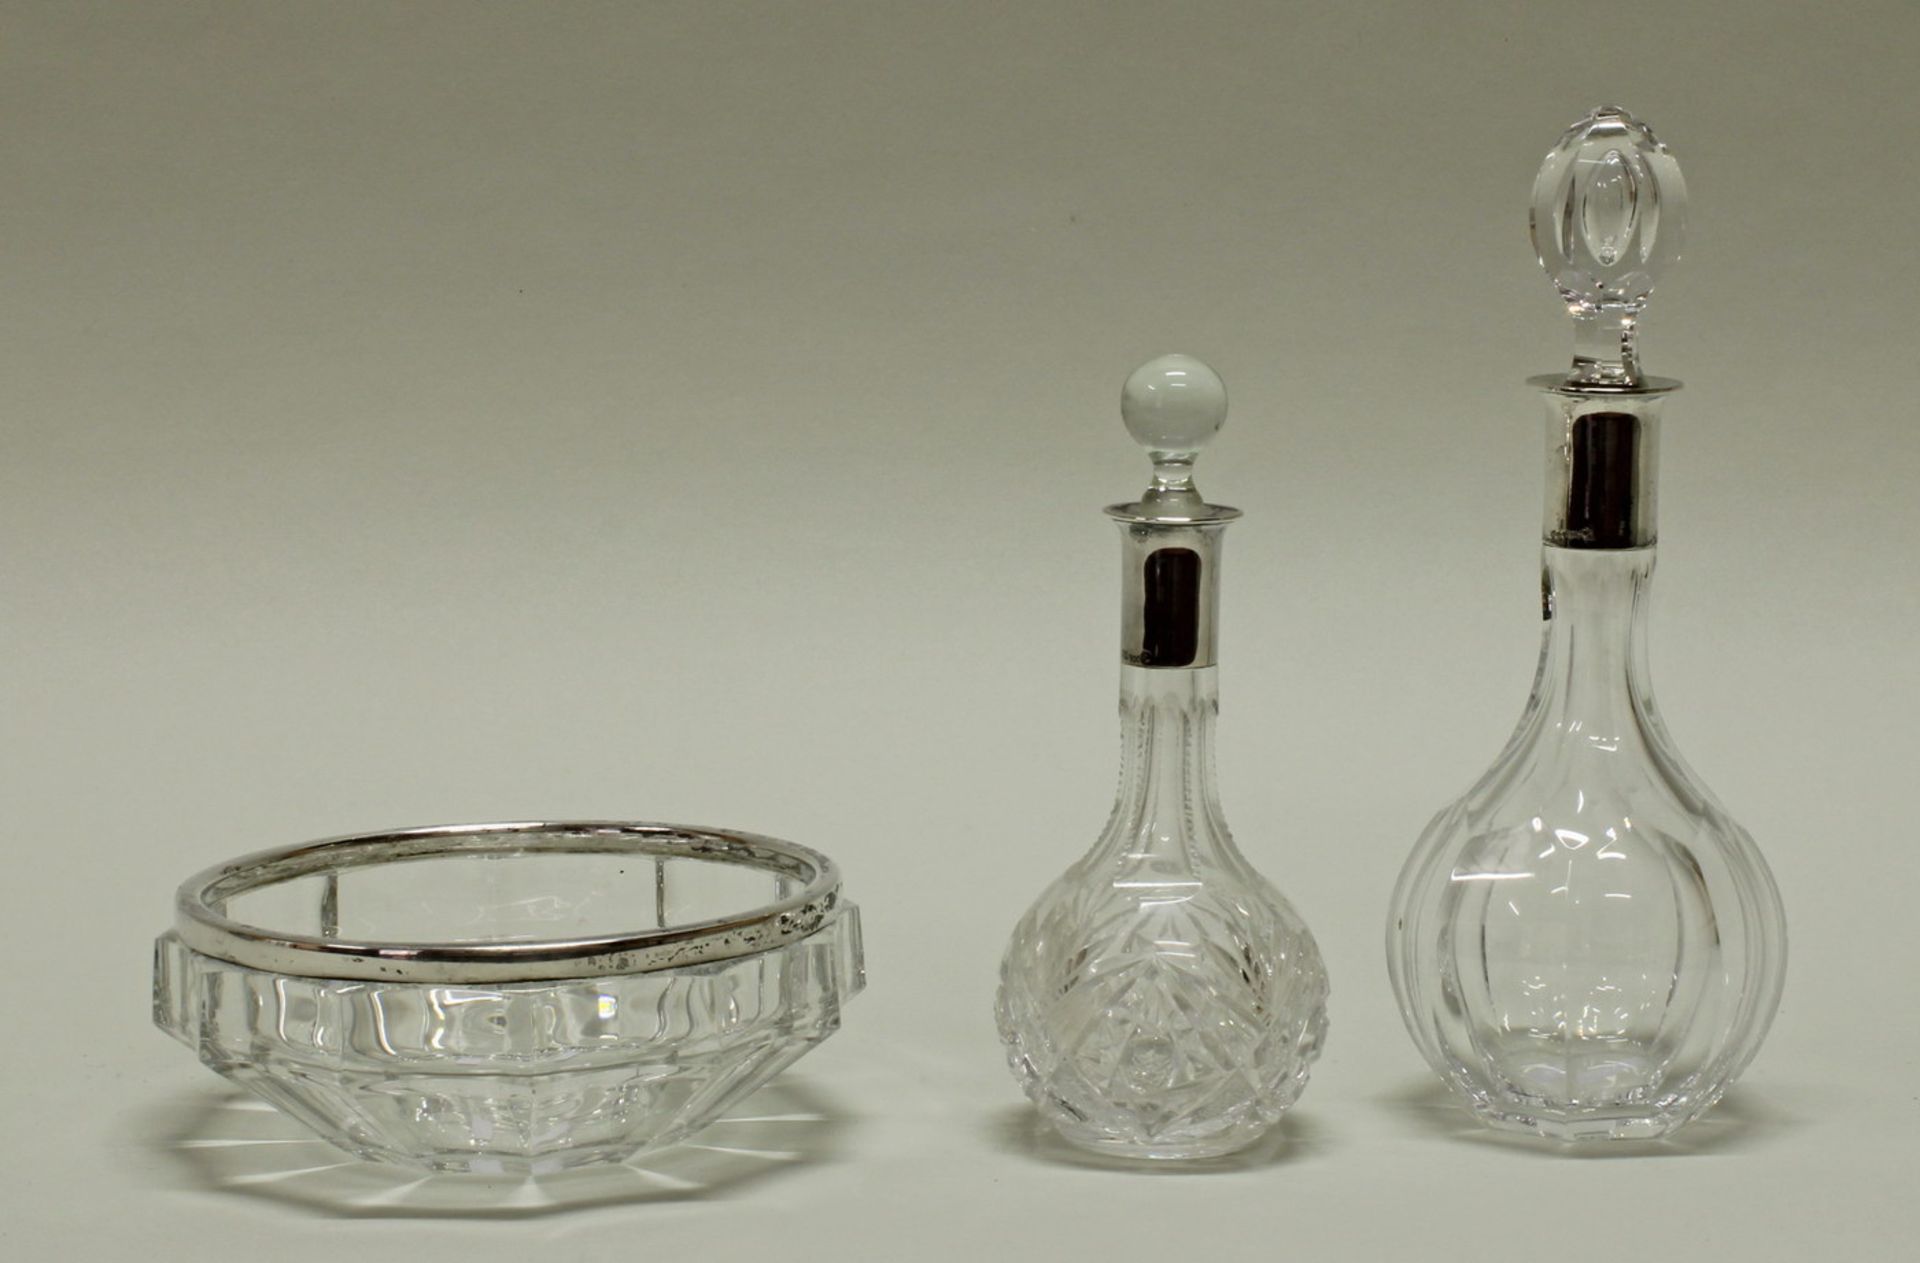 Schale, 2 Karaffen, Silber 800/830/835, deutsch, farbloses Kristallglas, Rand mit